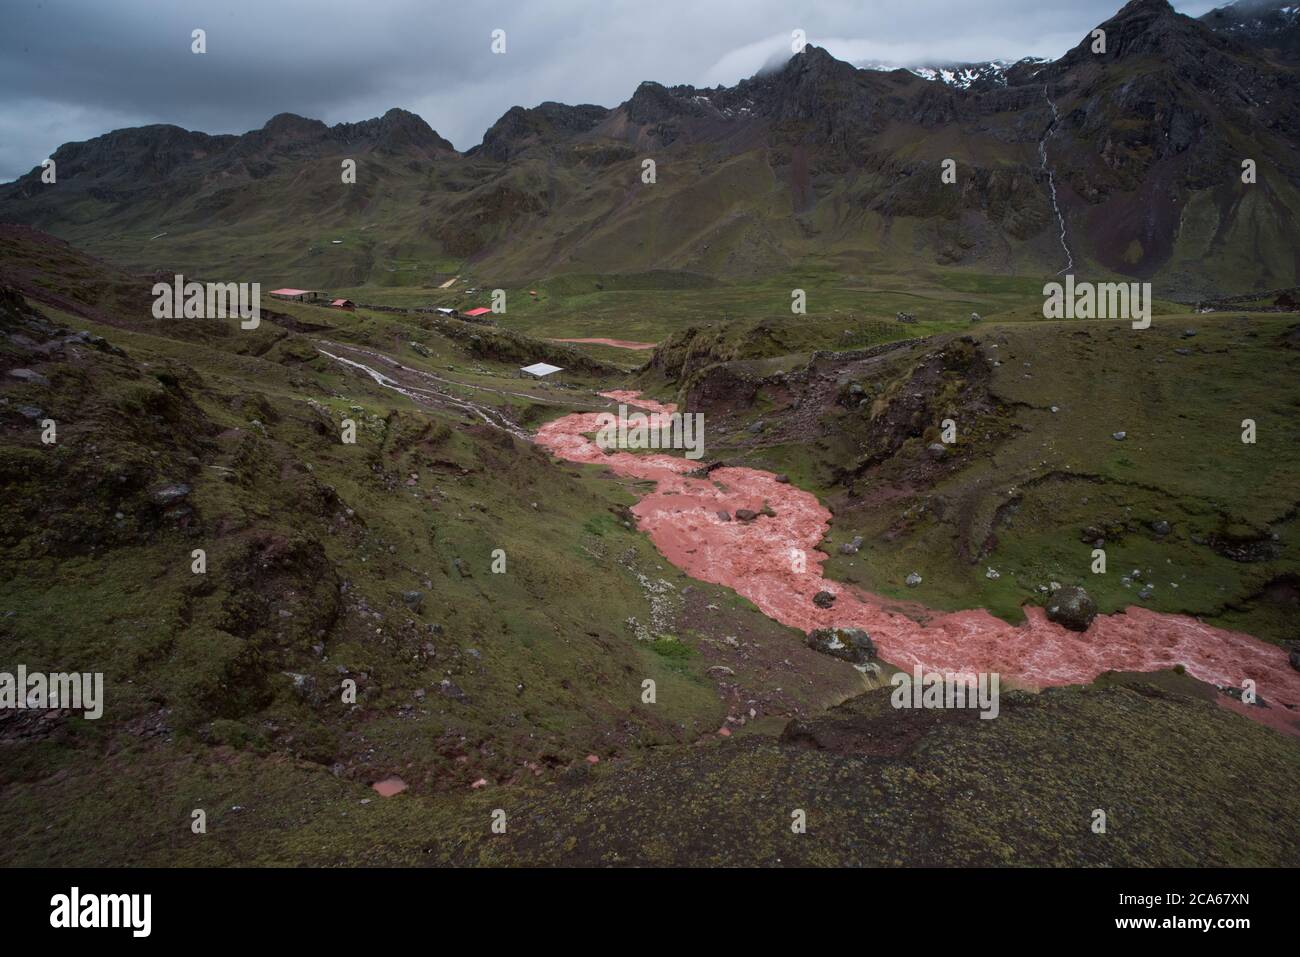 Der übereilte Bau der Straße zum Regenbogenberg in Peru führt zu ehemals sauberen Flüssen, die mit Sedimenten erstickt sind und durch Erosion abfließen. Stockfoto